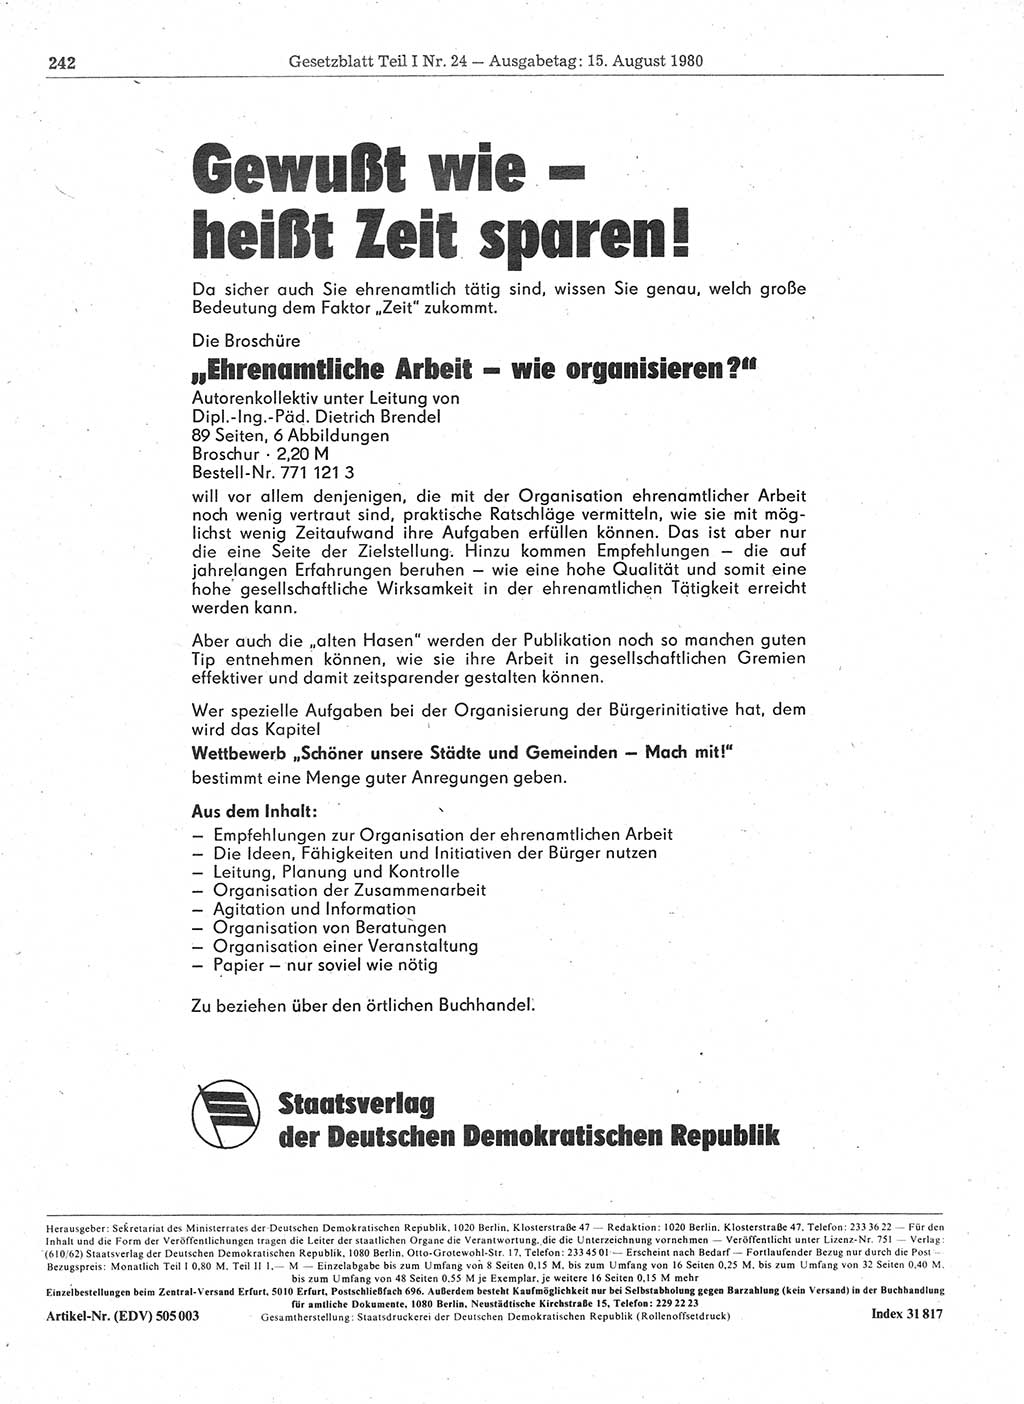 Gesetzblatt (GBl.) der Deutschen Demokratischen Republik (DDR) Teil Ⅰ 1980, Seite 242 (GBl. DDR Ⅰ 1980, S. 242)